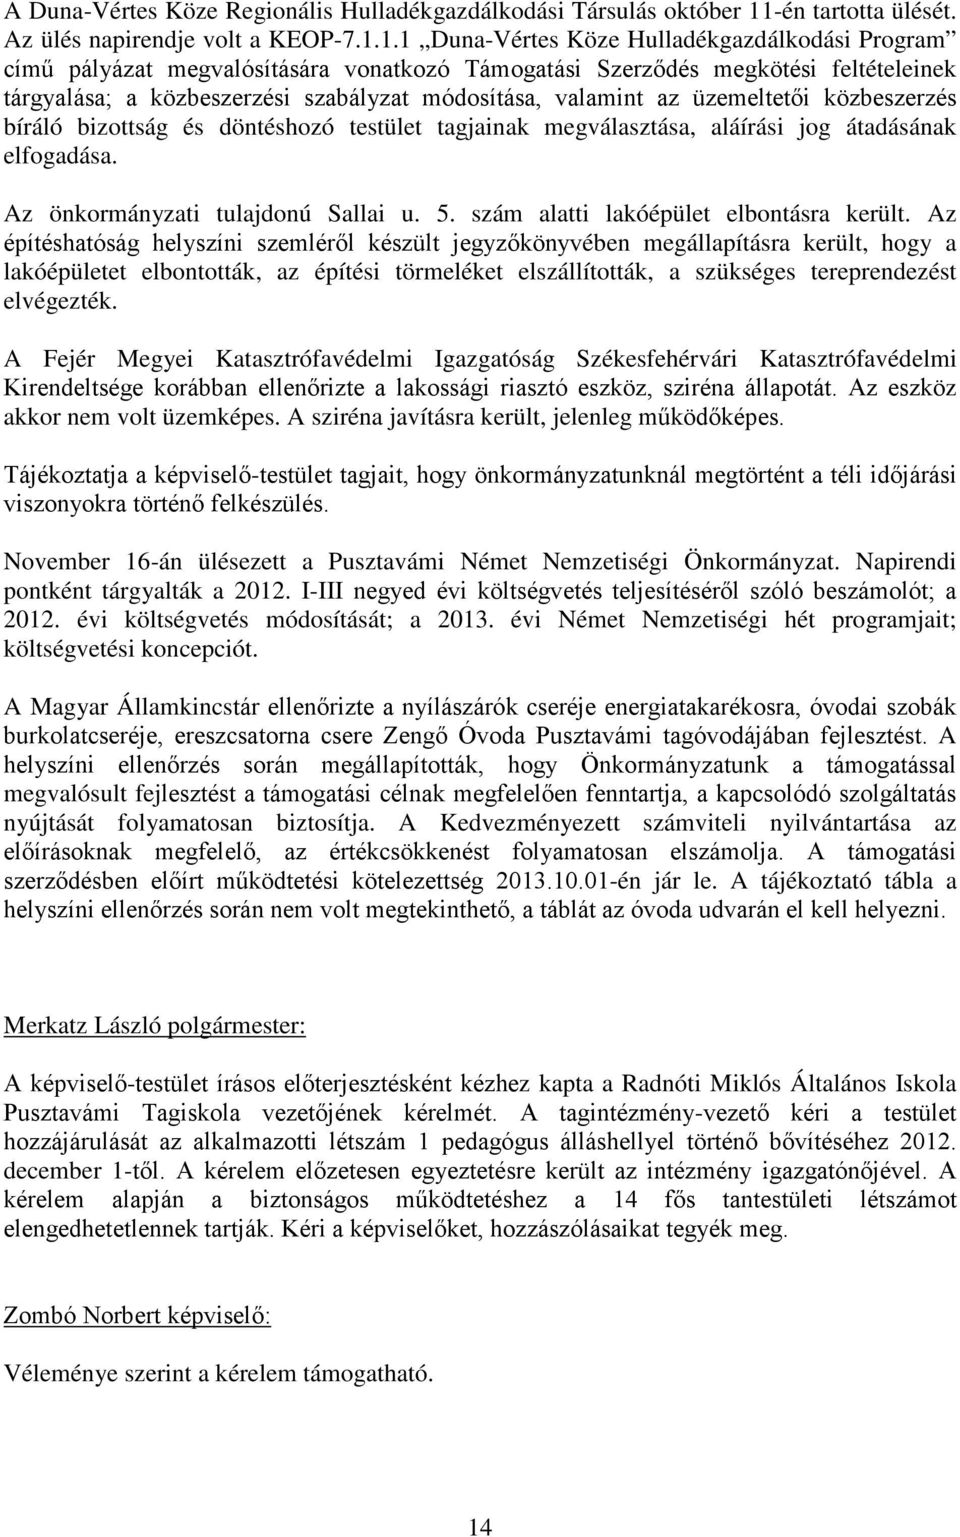 1.1 Duna-Vértes Köze Hulladékgazdálkodási Program című pályázat megvalósítására vonatkozó Támogatási Szerződés megkötési feltételeinek tárgyalása; a közbeszerzési szabályzat módosítása, valamint az